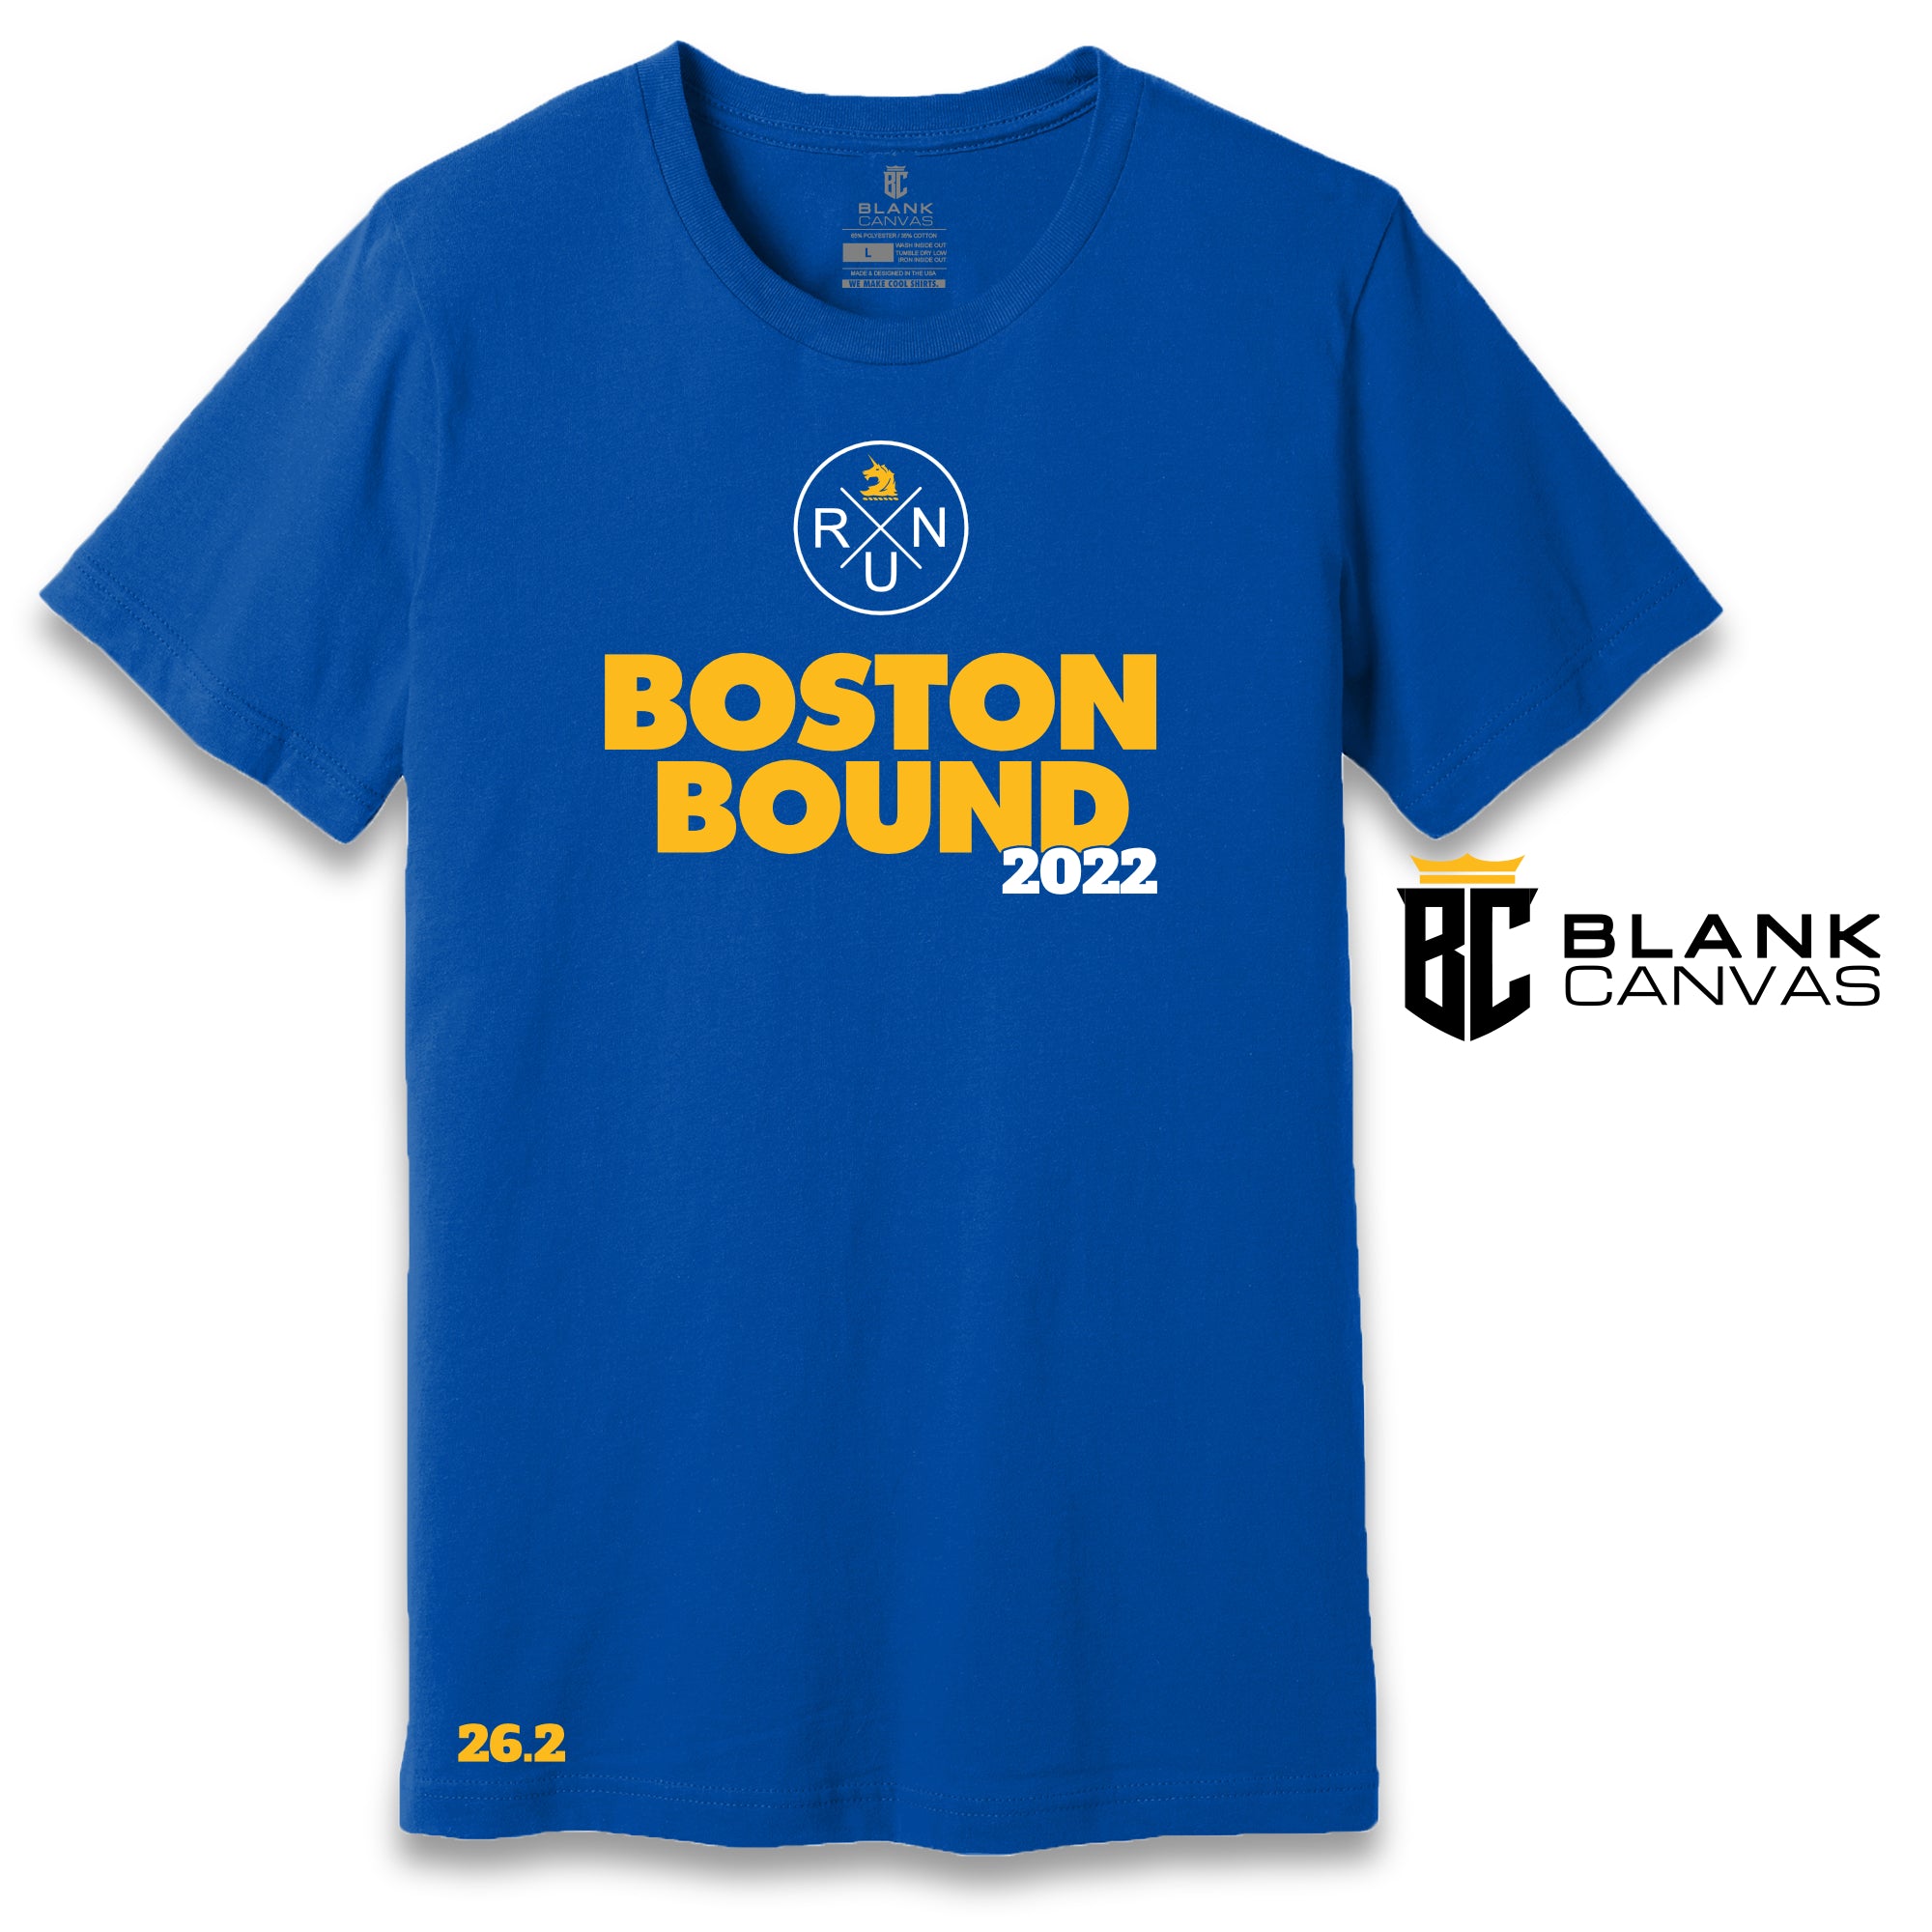 Boston Marathon Bound Qualifier T-Shirt – Blank Canvas Merch